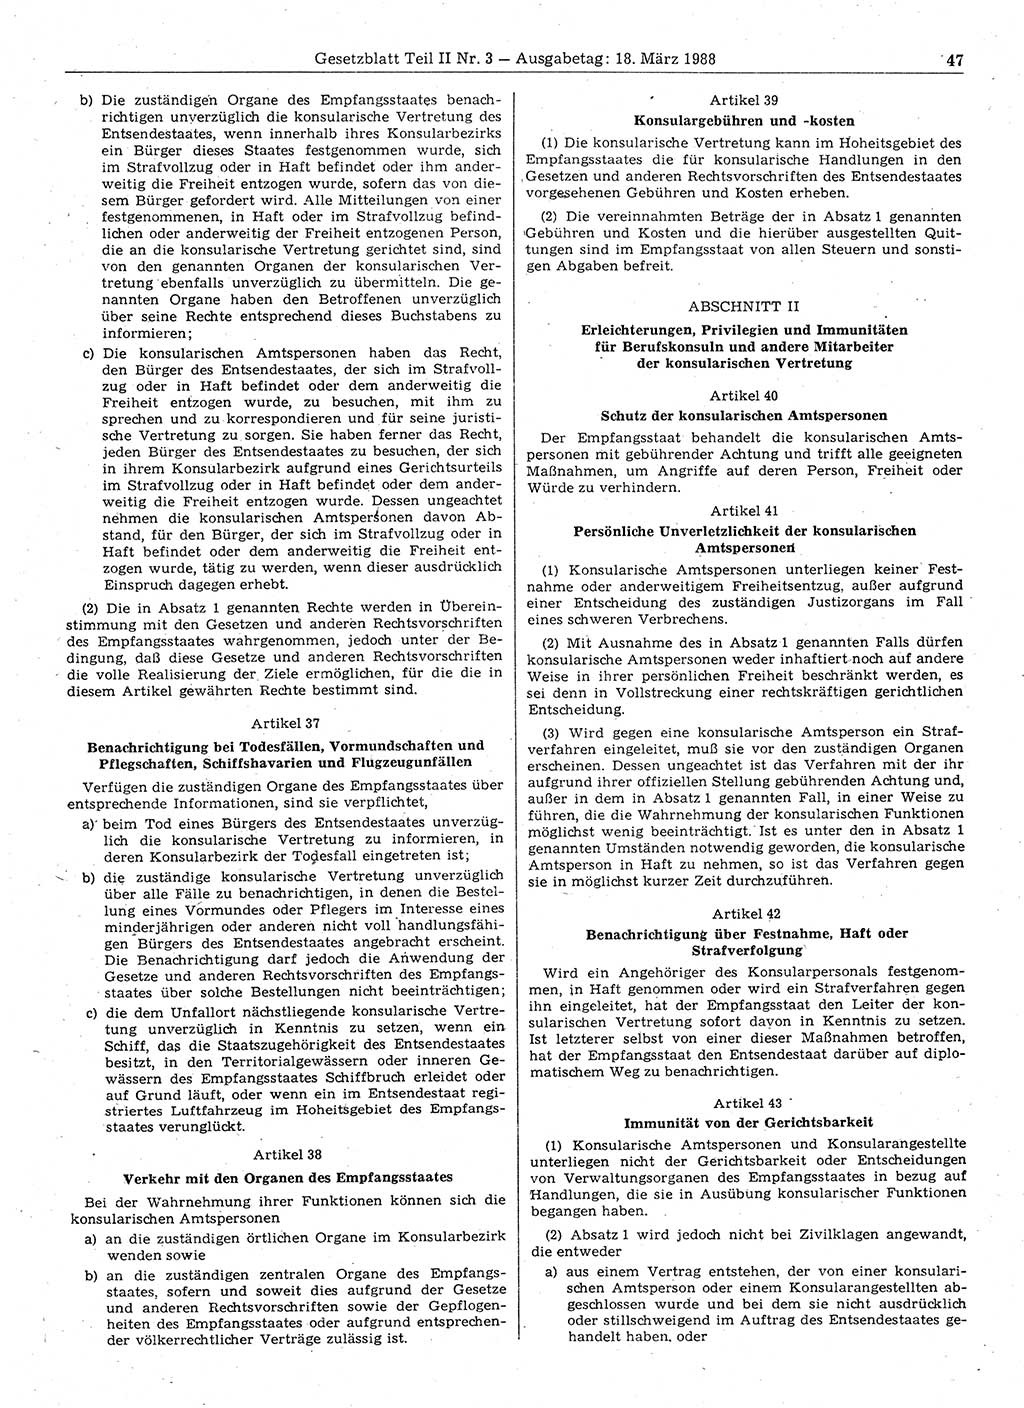 Gesetzblatt (GBl.) der Deutschen Demokratischen Republik (DDR) Teil ⅠⅠ 1988, Seite 47 (GBl. DDR ⅠⅠ 1988, S. 47)